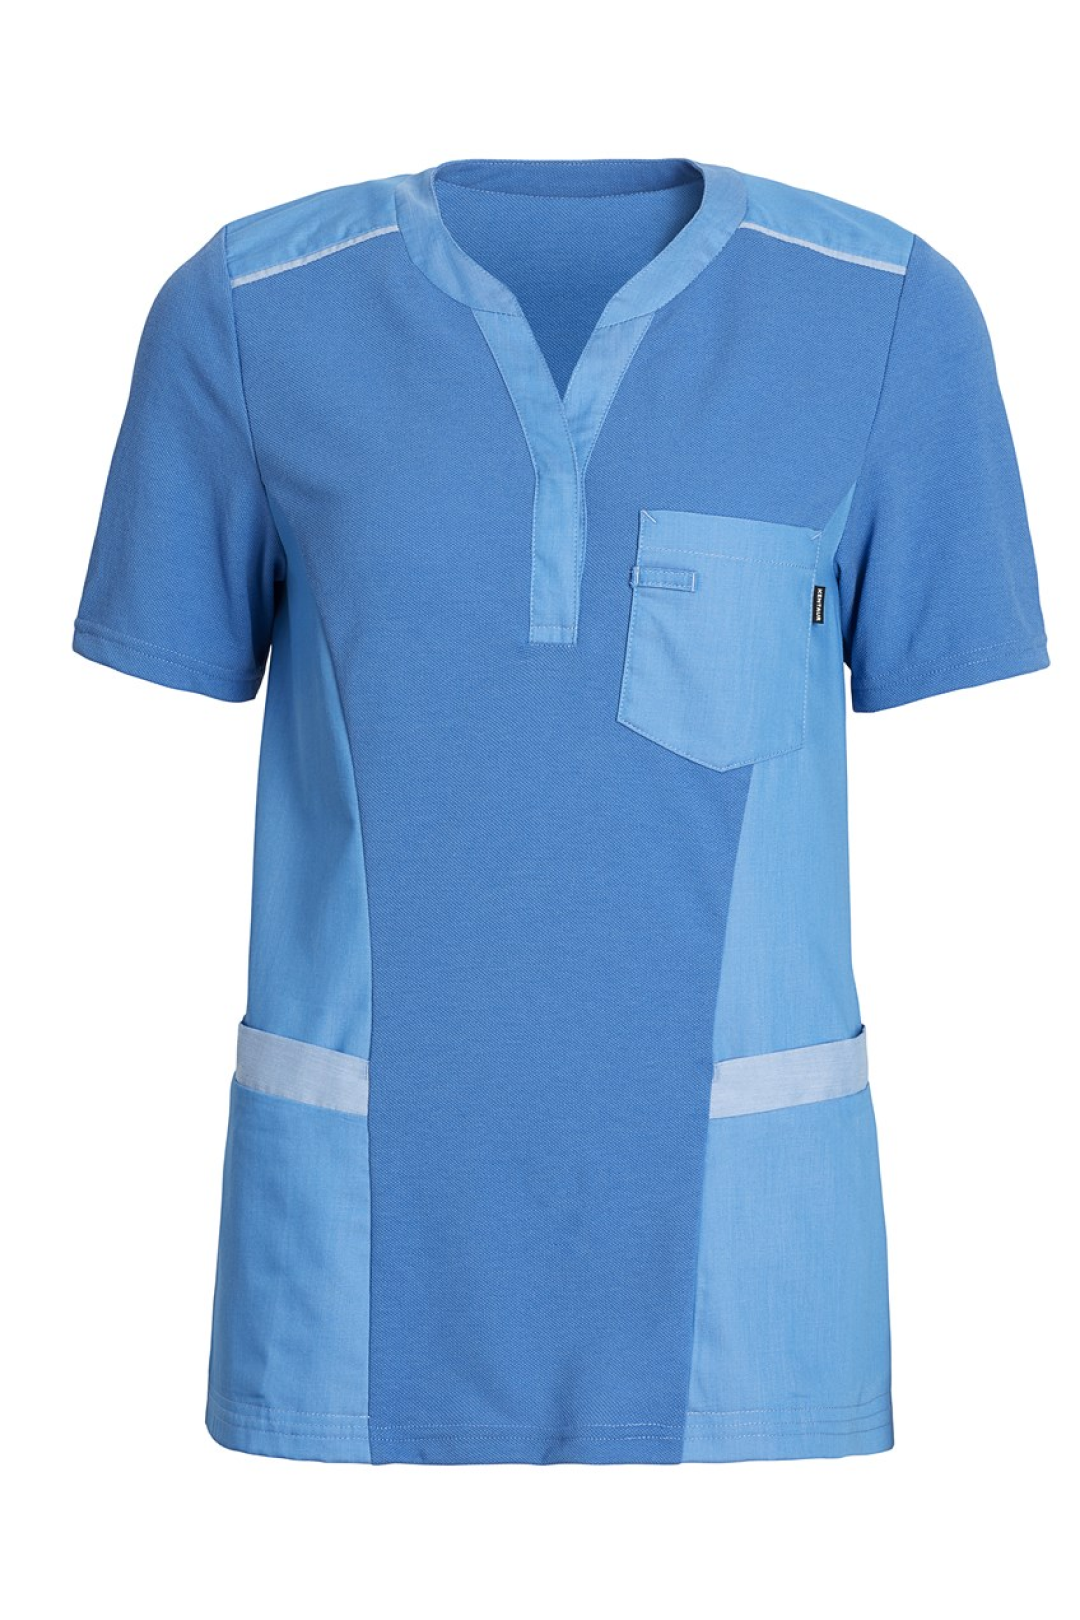 Damen Pique Shirt mit V-Ausschnitt super blue